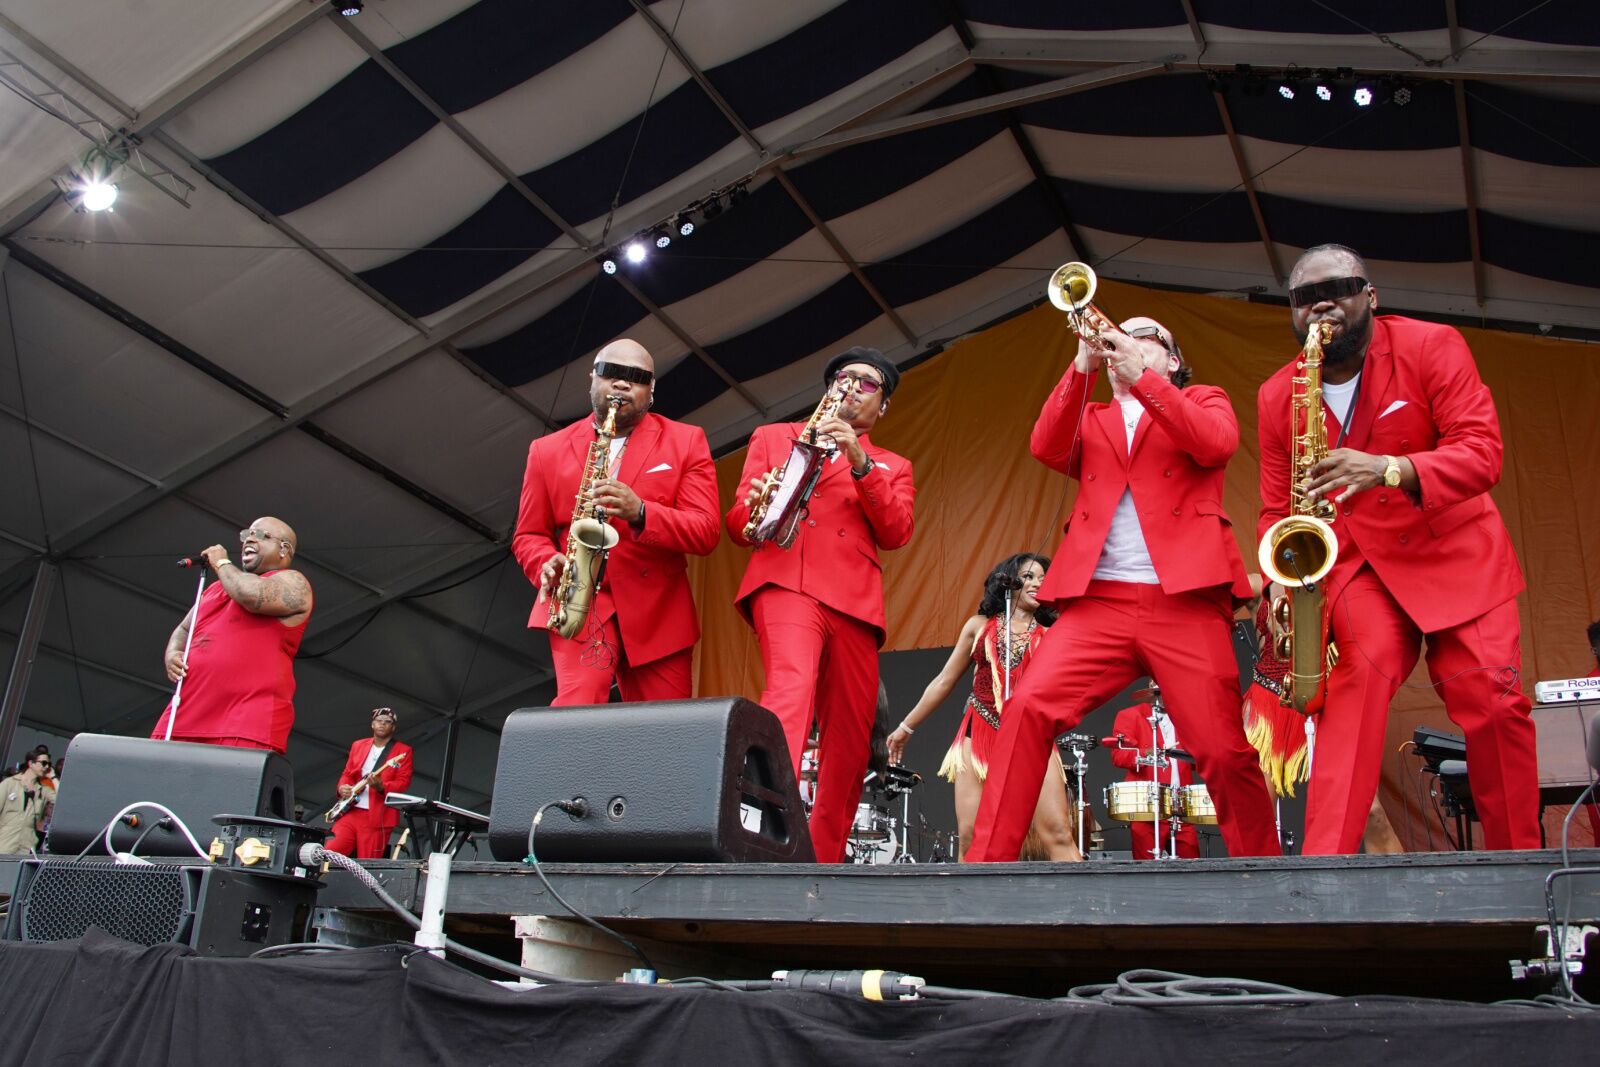 festivales de nueva orleans - banda en el festival de jazz vestida de rojo